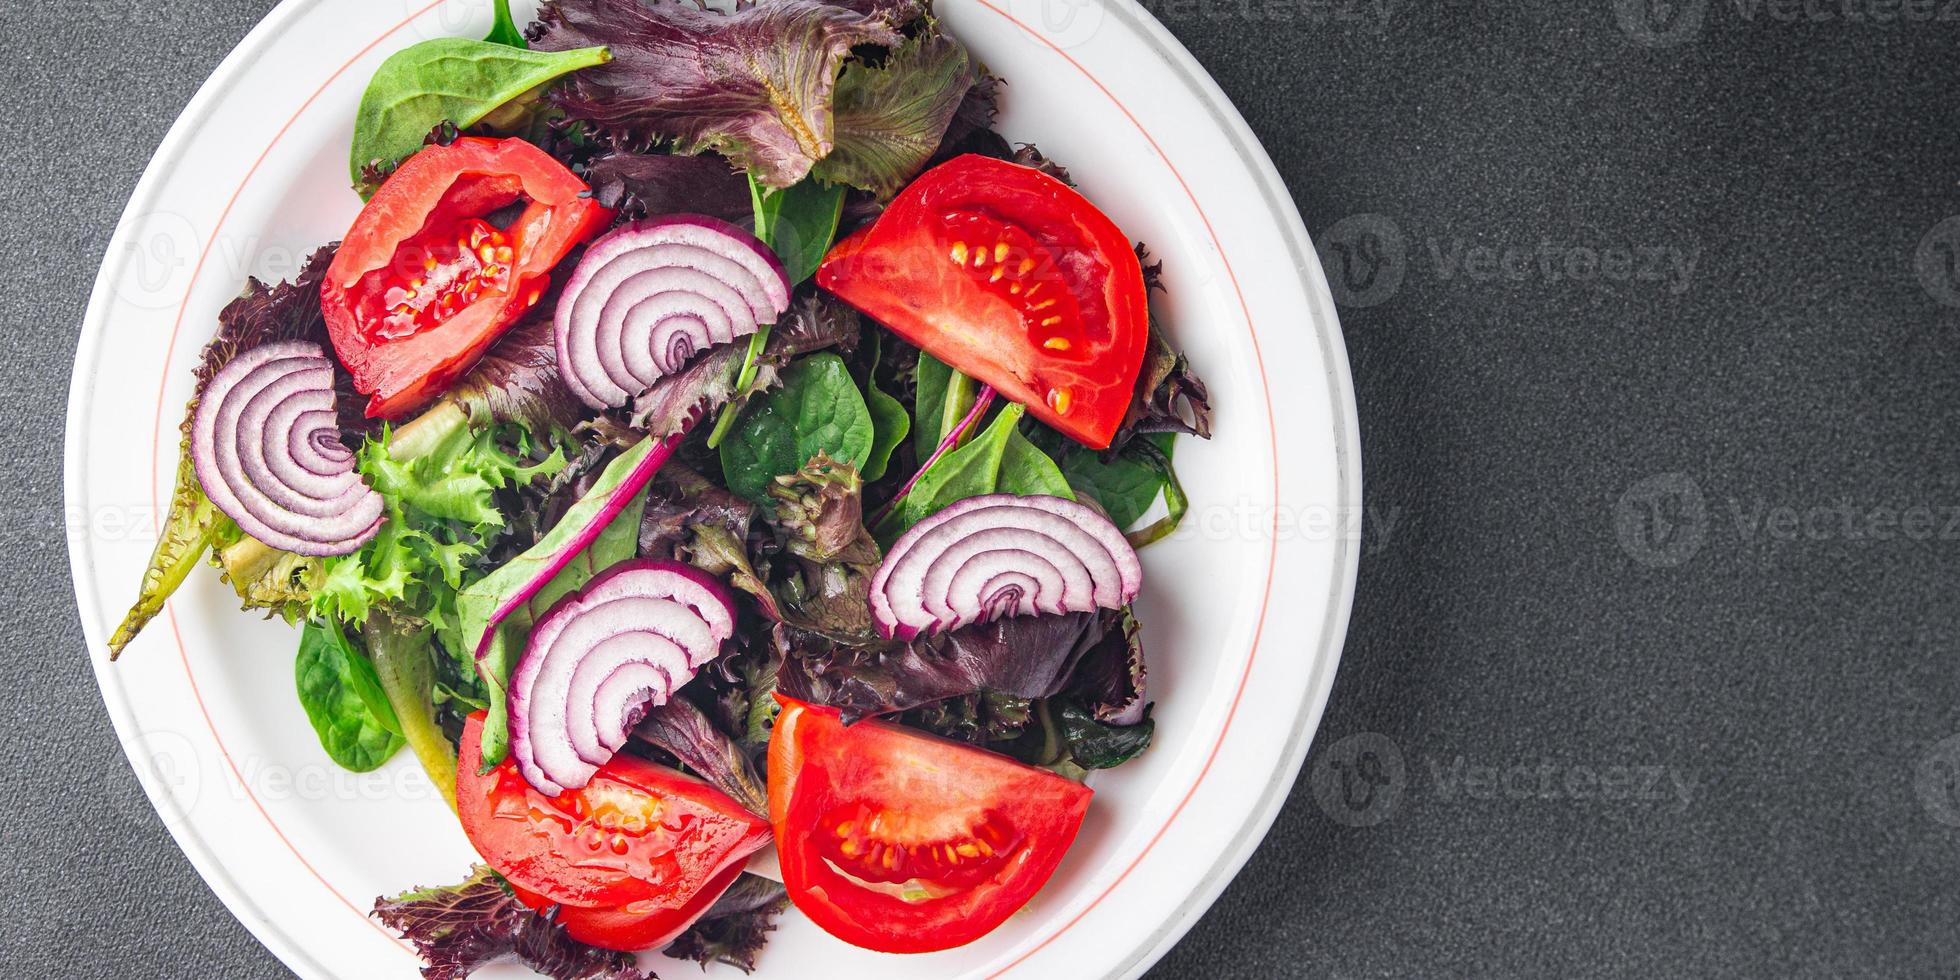 salade de tomates légume repas sain nourriture collation régime alimentaire sur la table espace de copie arrière-plan alimentaire rustique vue de dessus régime céto ou paléo végétarien végétalien ou végétarien photo